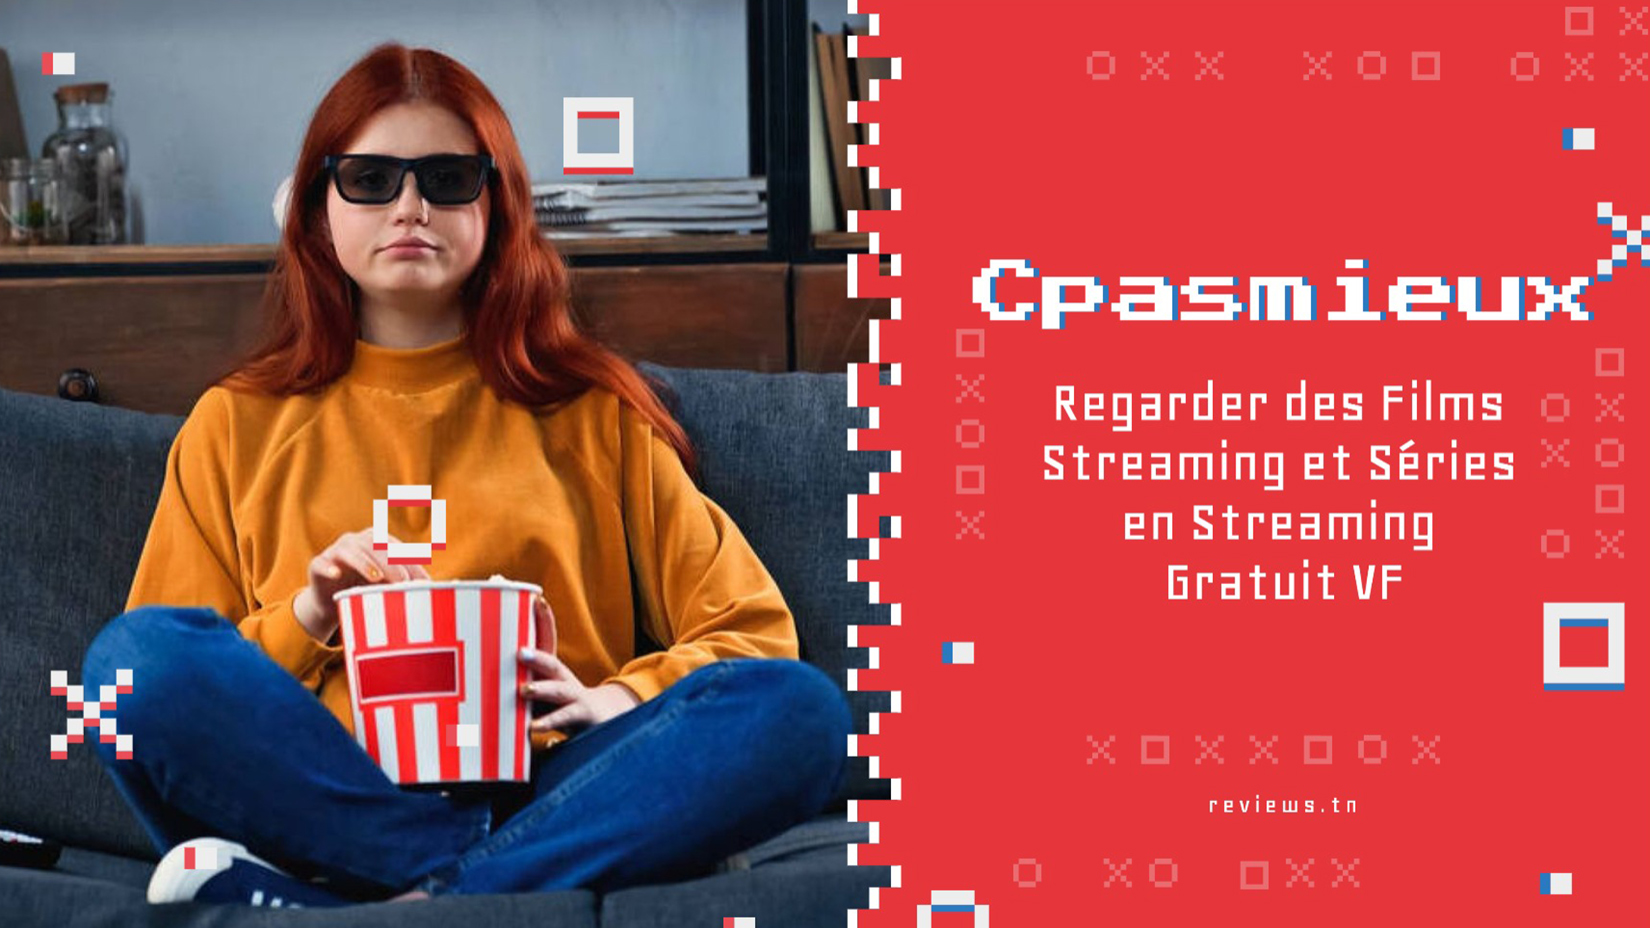 Cpasmieux : Regarder des Films Streaming et Séries en Streaming Gratuit VF